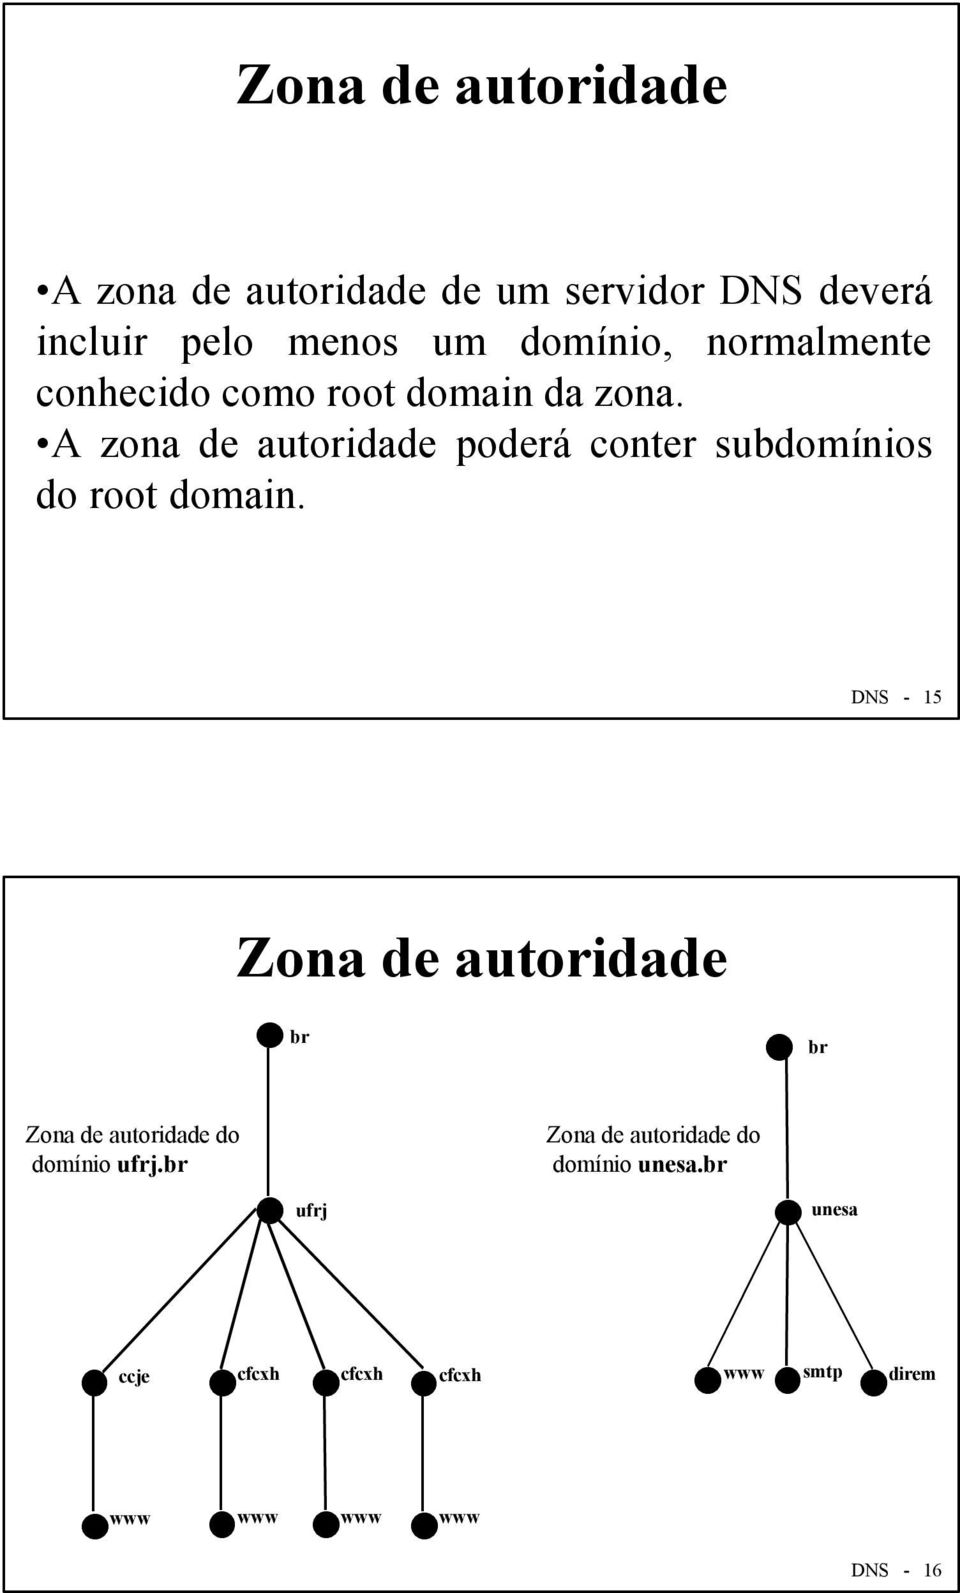 A zona de autoridade poderá conter subdomínios do root domain.